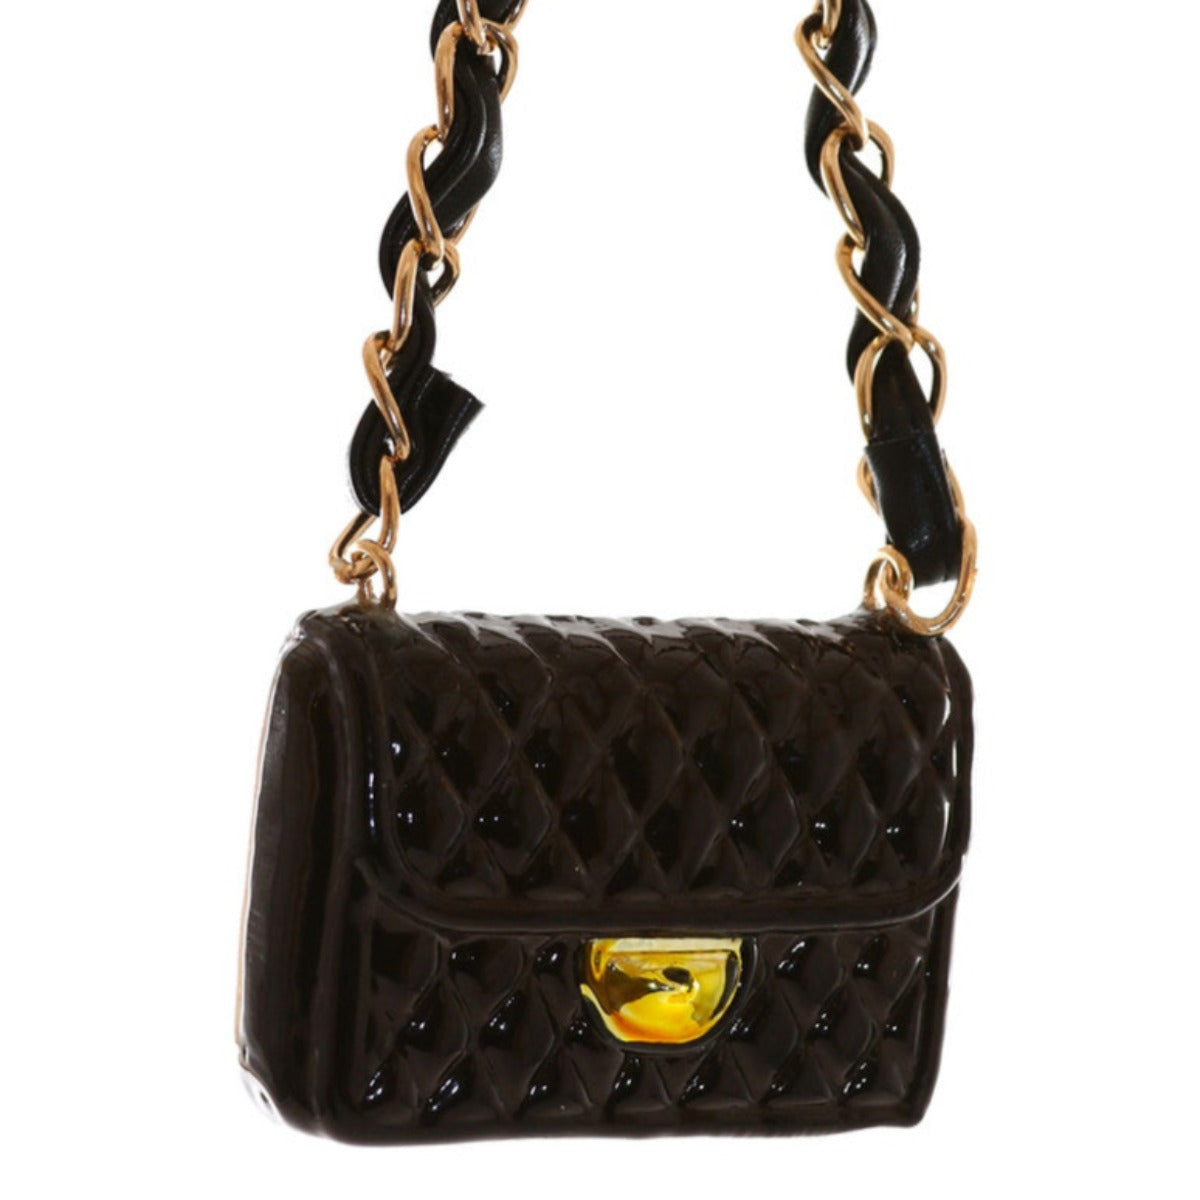 Black Handbag Ornament –